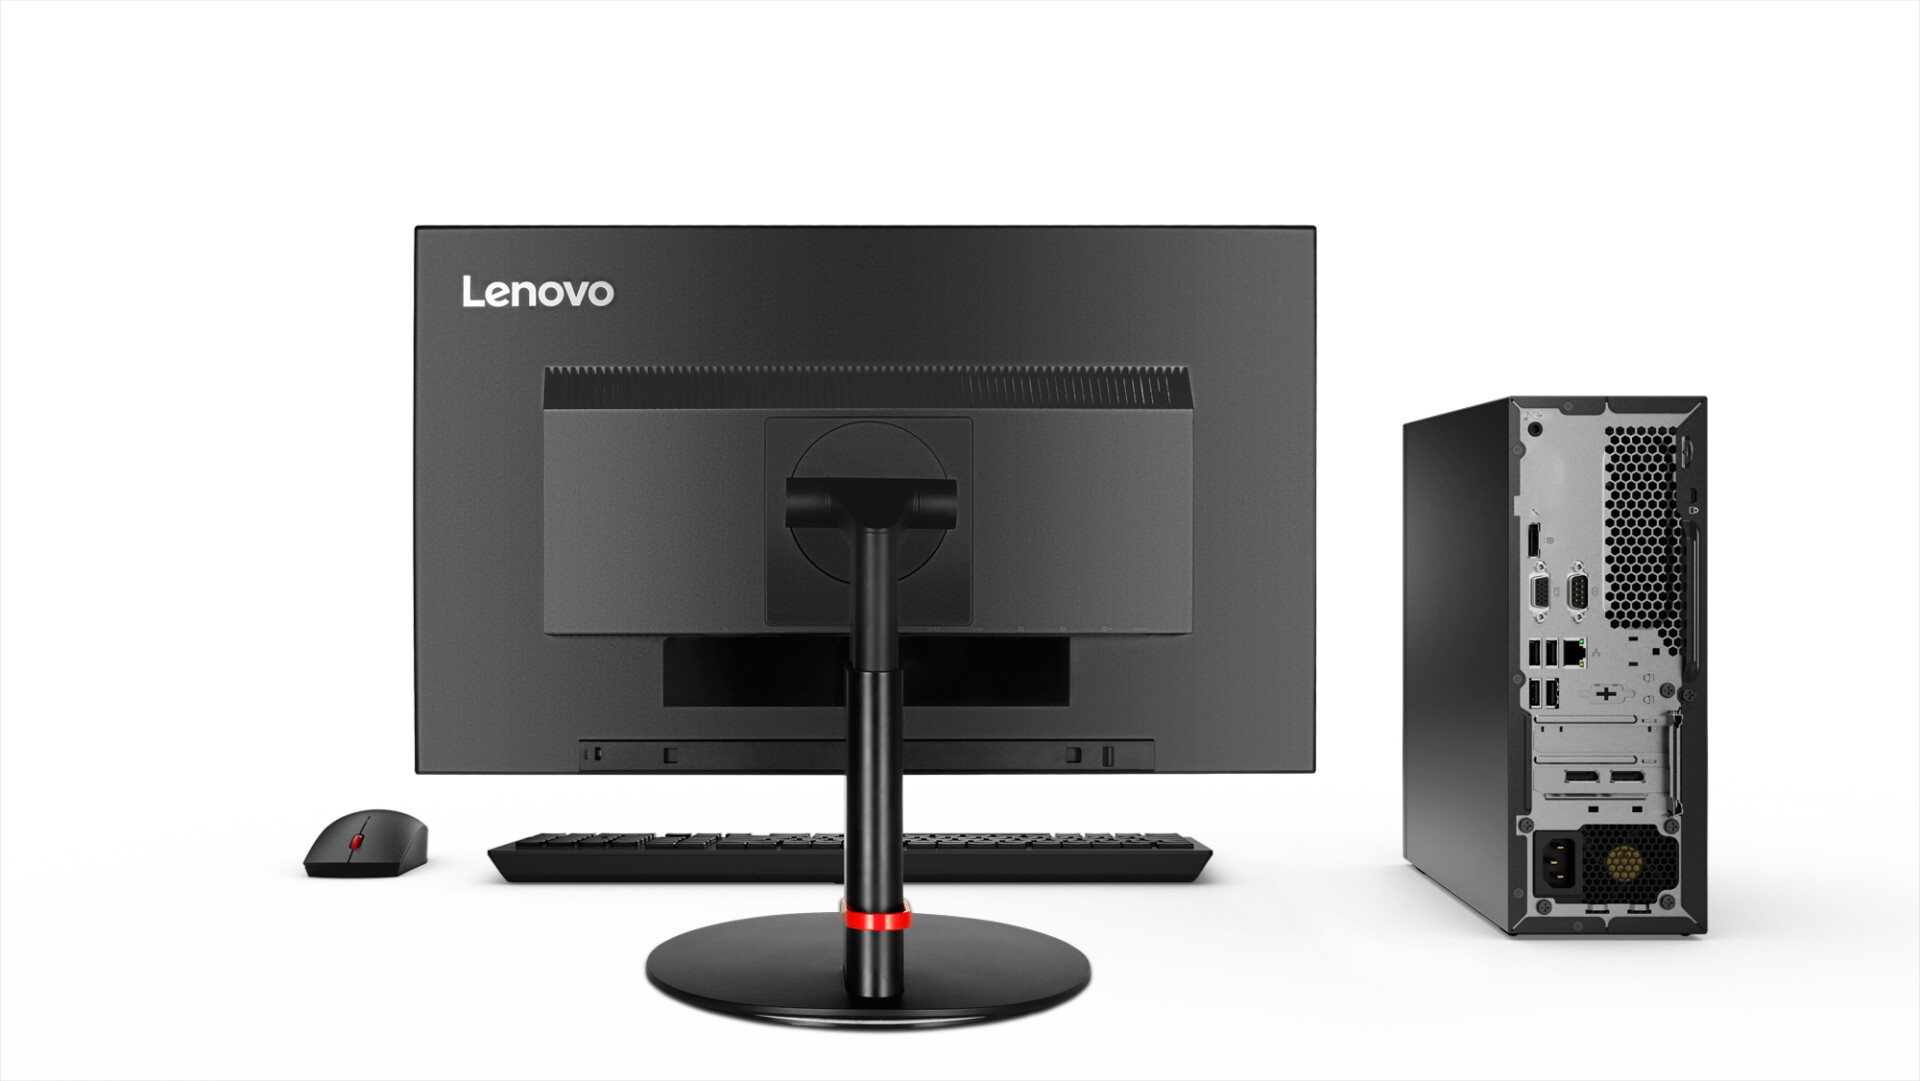 Lenovo ra mắt máy tính để bàn ThinkCentre M Series mới cho văn phòng hiện đại